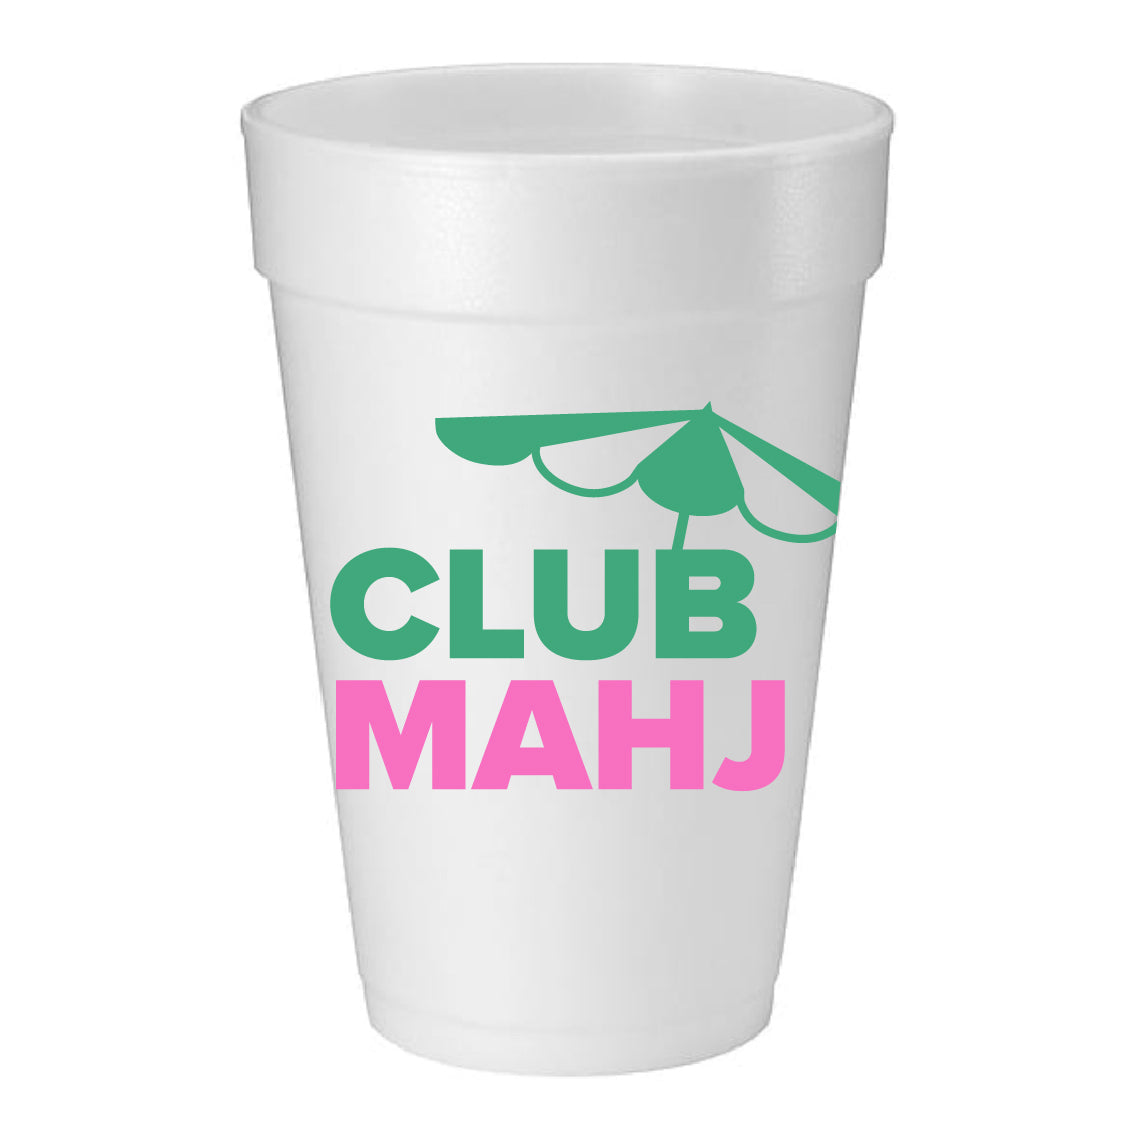 "CLUB MAHJ” FOAM CUPS